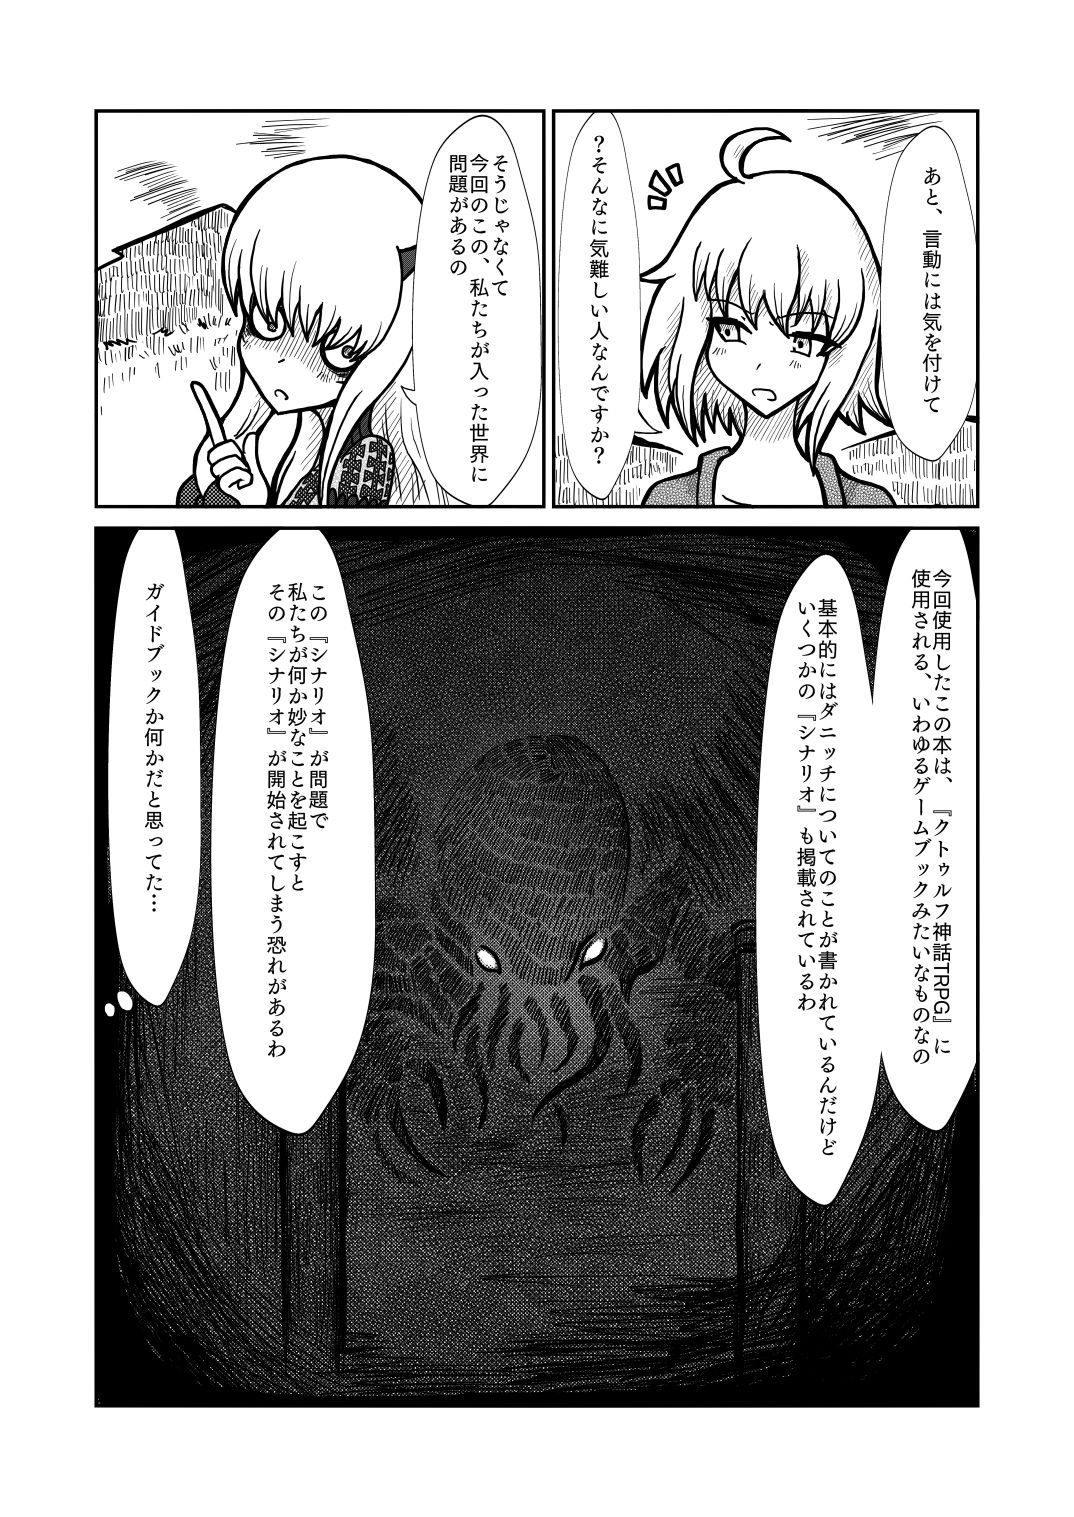 [Shigato] Jeanne x Lavi Dunwich Kai Kikou (Fate/Grand Order, Cthulhu Mythos) [Digital] 11